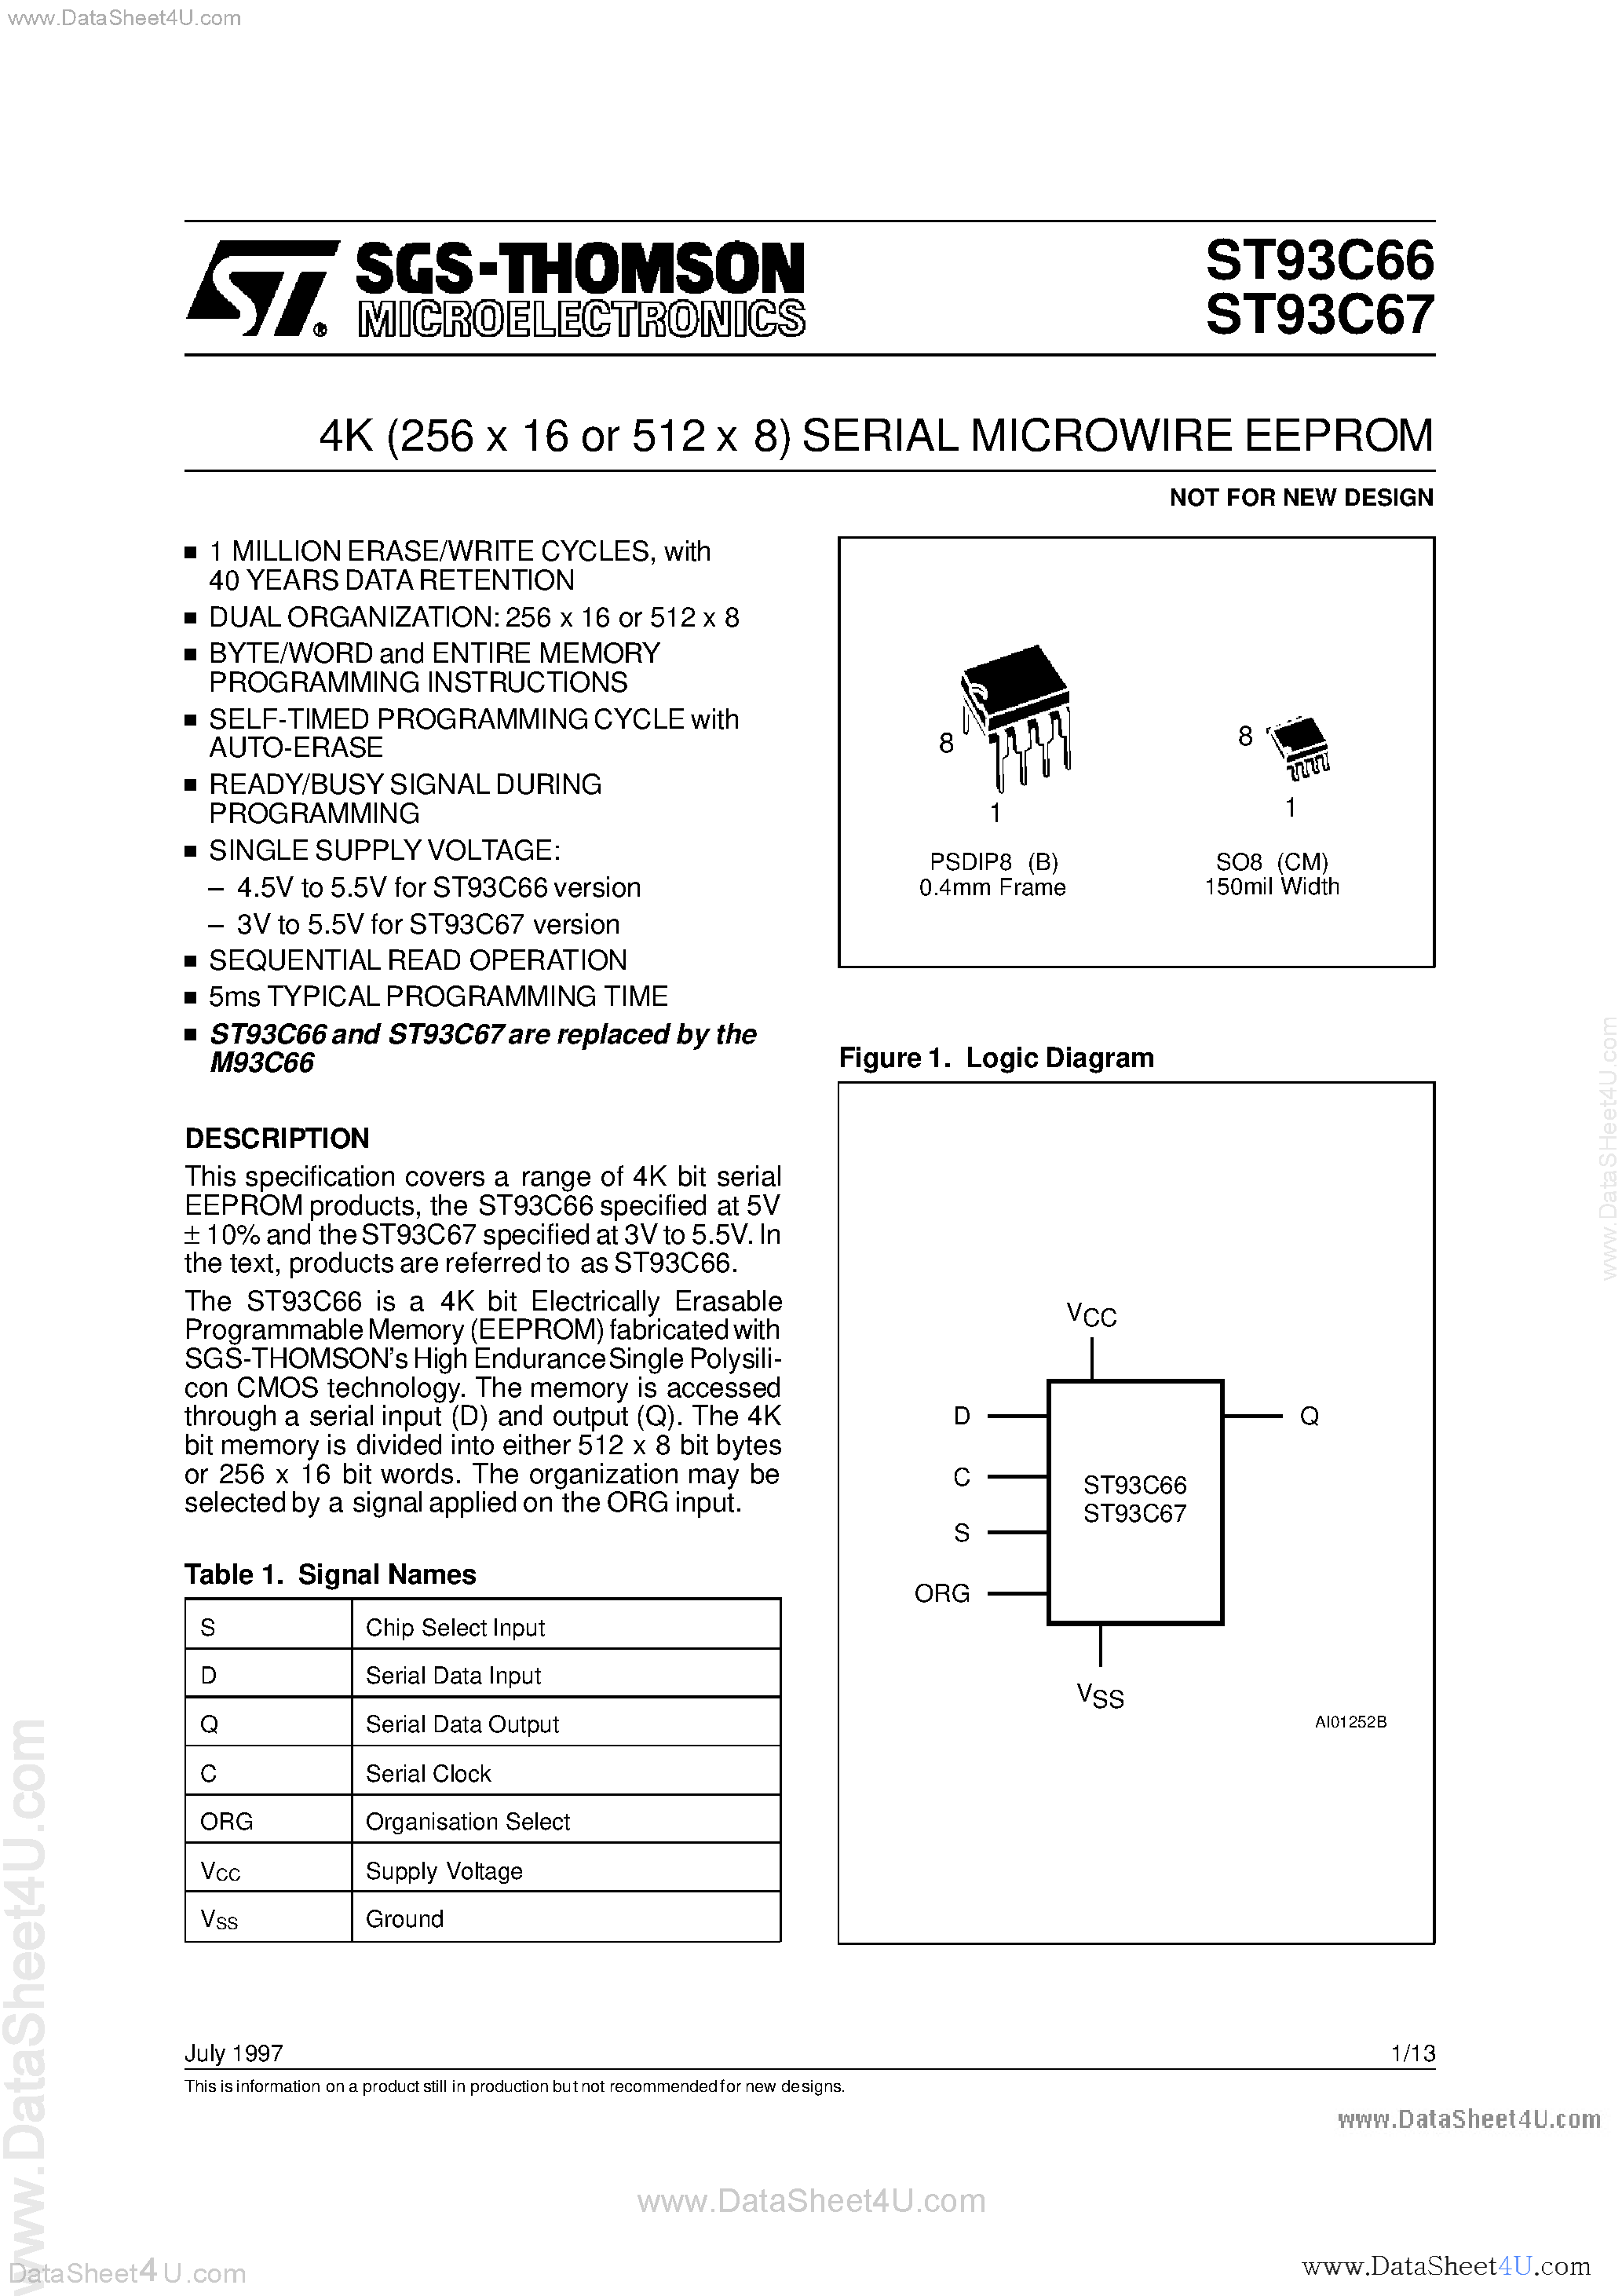 Даташит ST93C66 - (ST93C66 / ST93C67) 4K 256 x 16 or 512 x 8 SERIAL MICROWIRE EEPROM страница 1